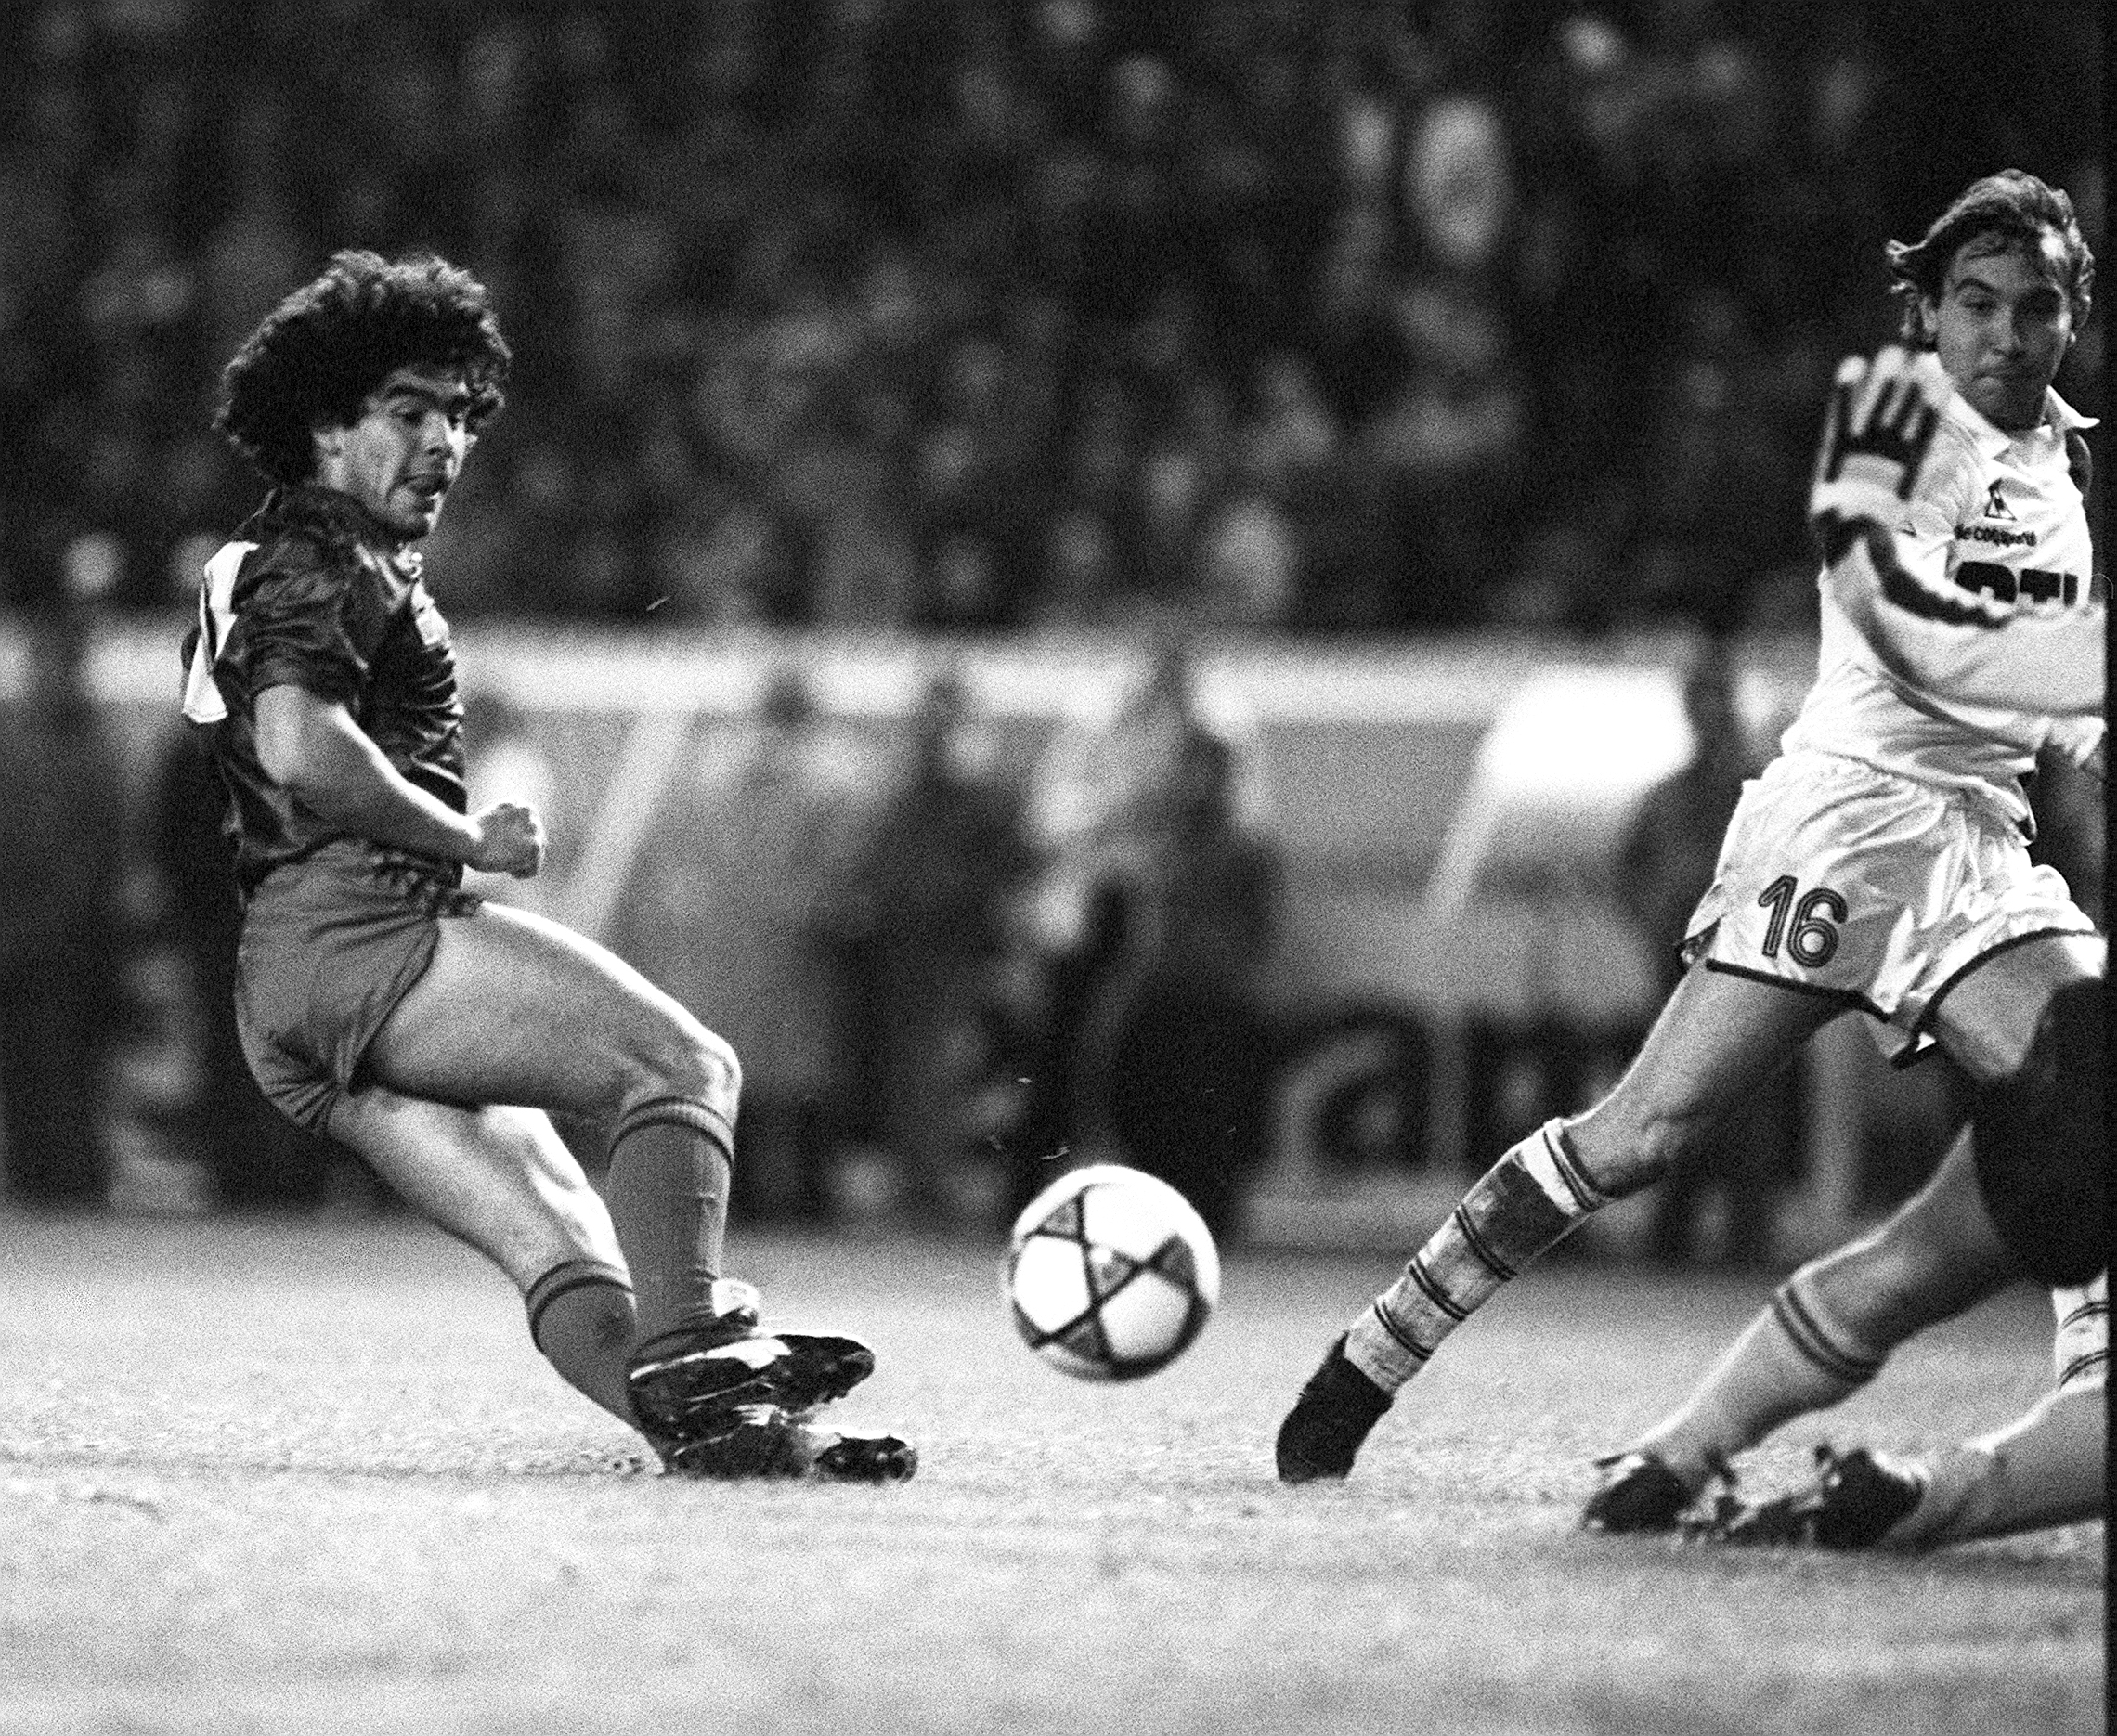 24. Diego Maradona